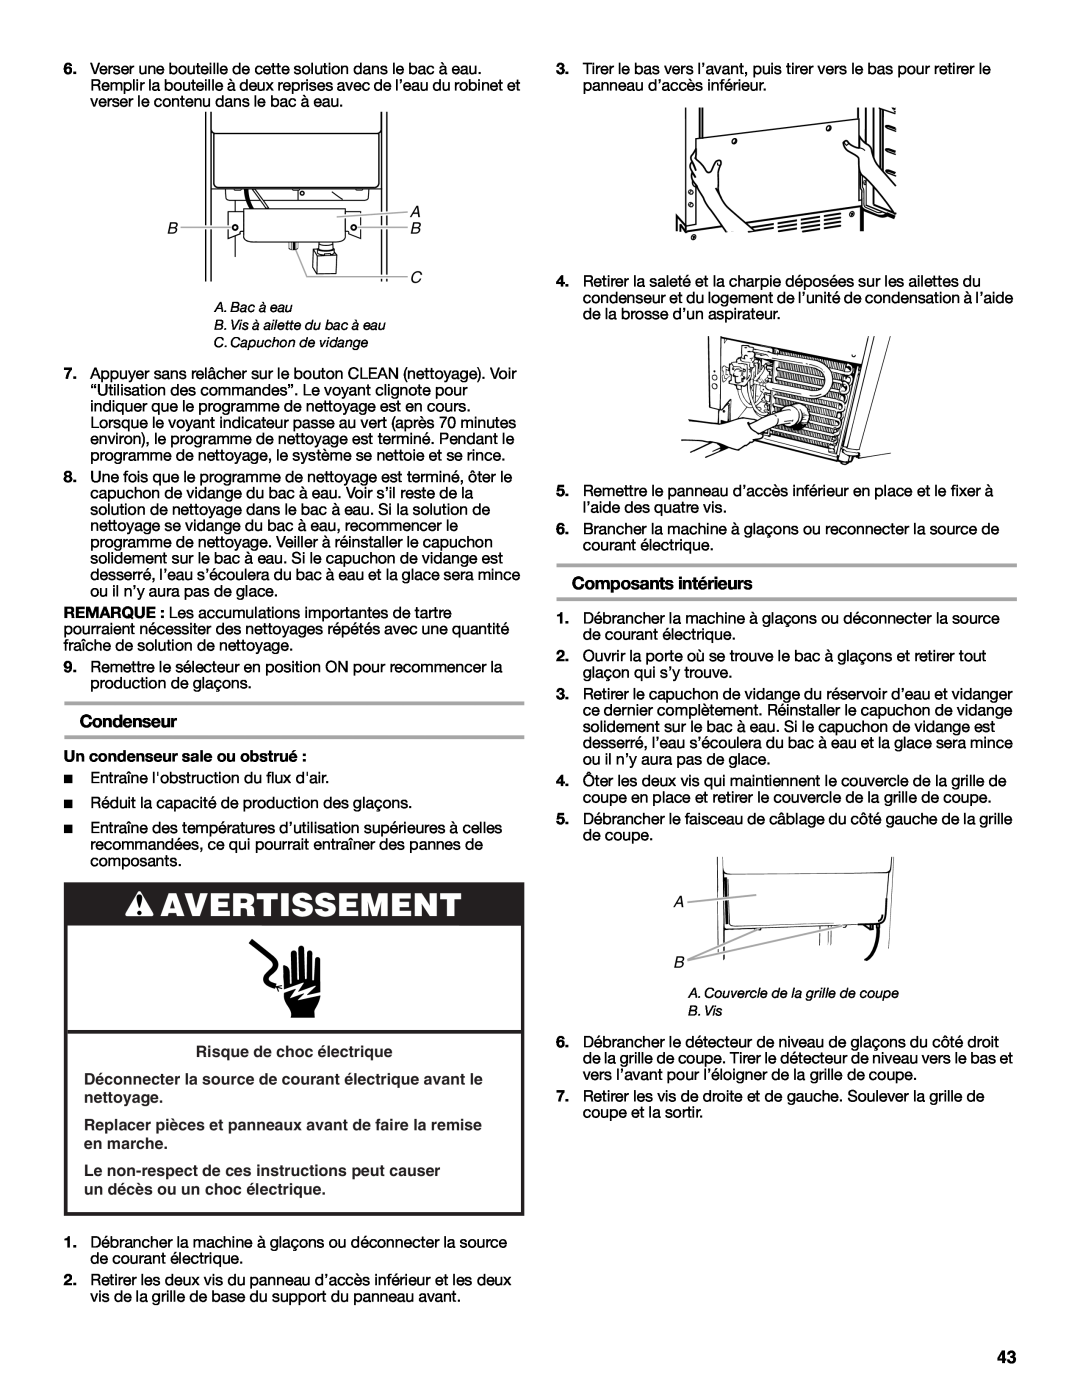 Jenn-Air W10282143B manual Condenseur, Composants intérieurs, Risque de choc électrique, Avertissement 